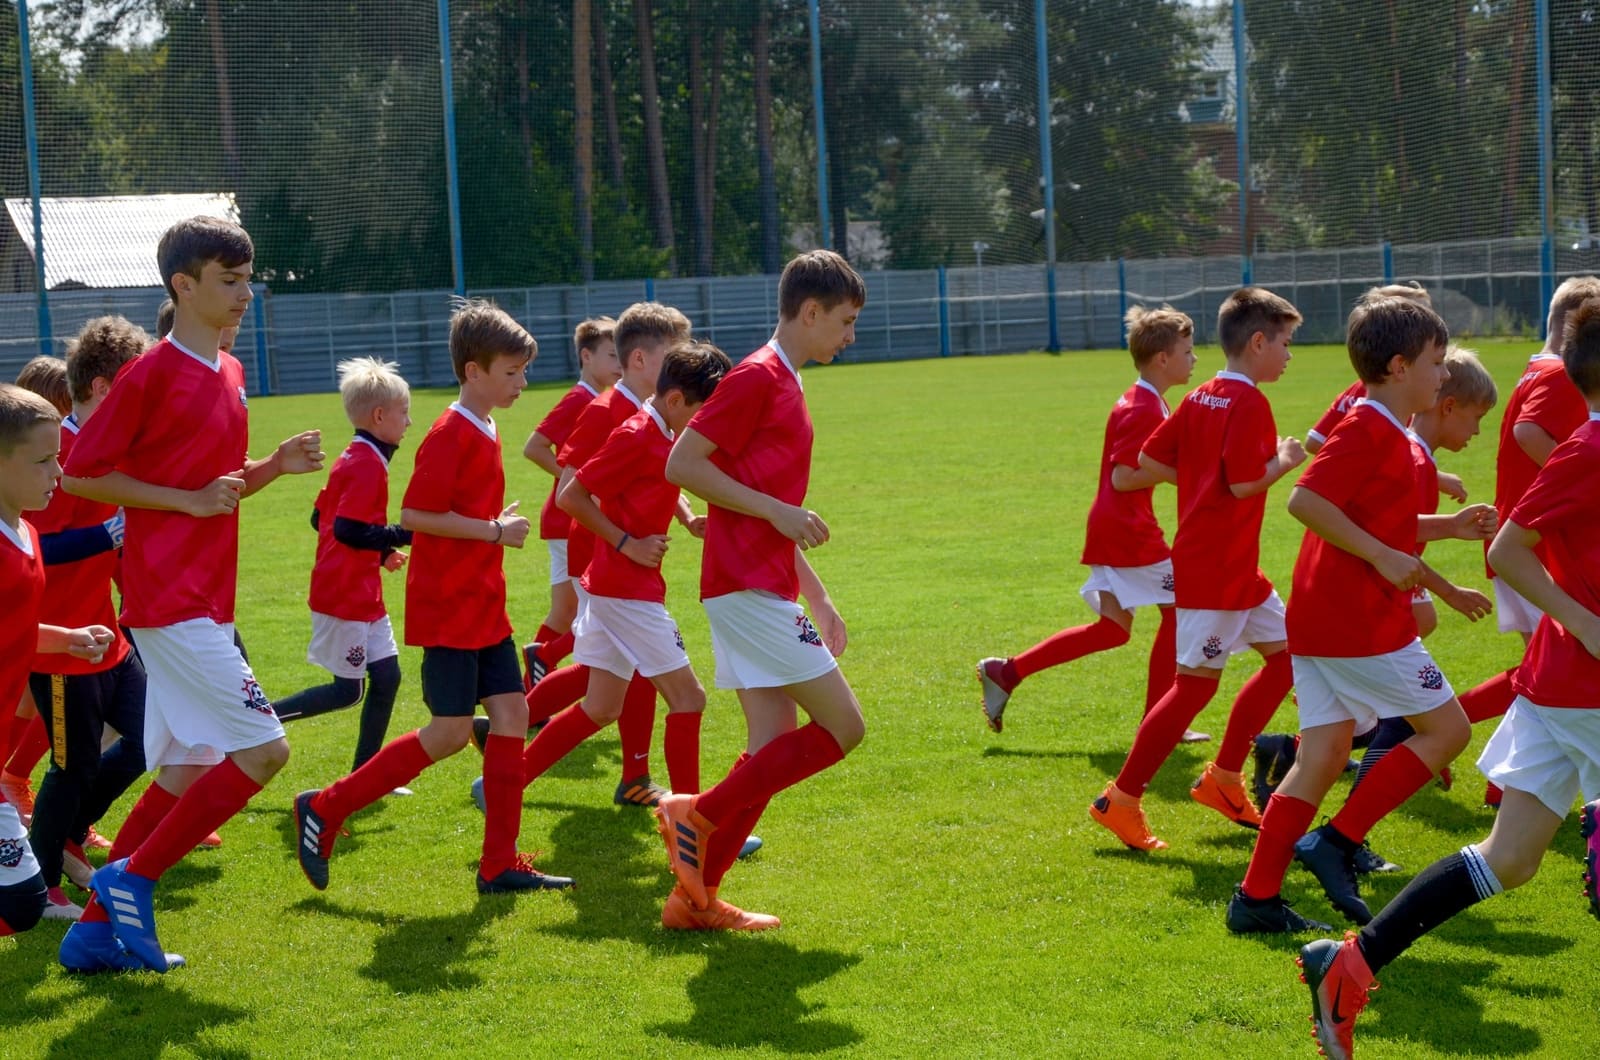 «FC Stuttgart - Кратово» – футбольный лагерь в Подмосковье, фото 11